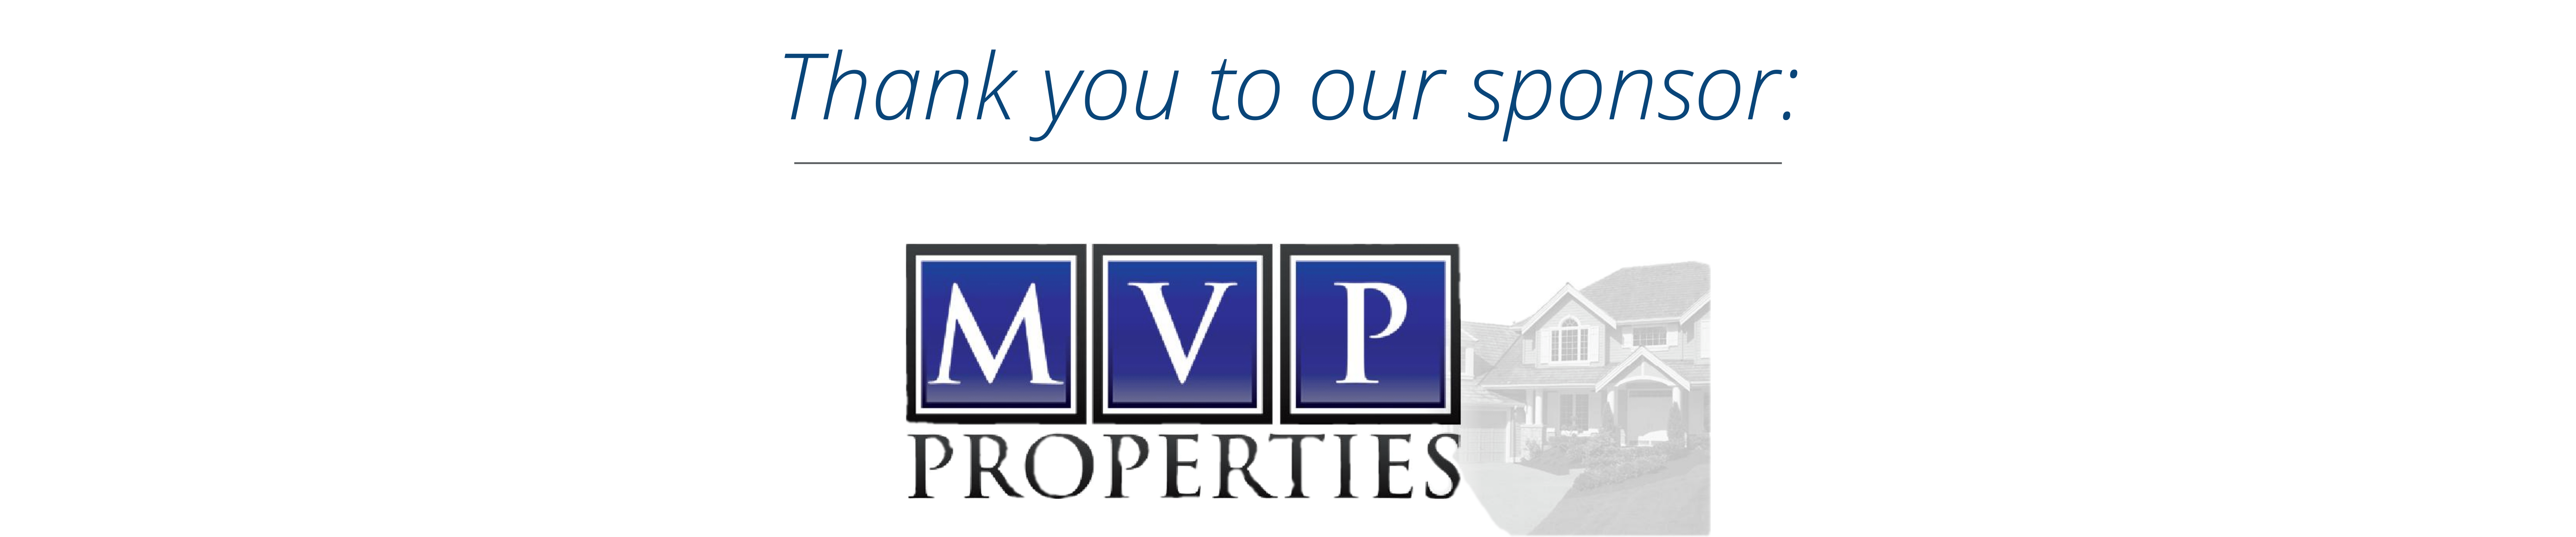 MVP Properties.